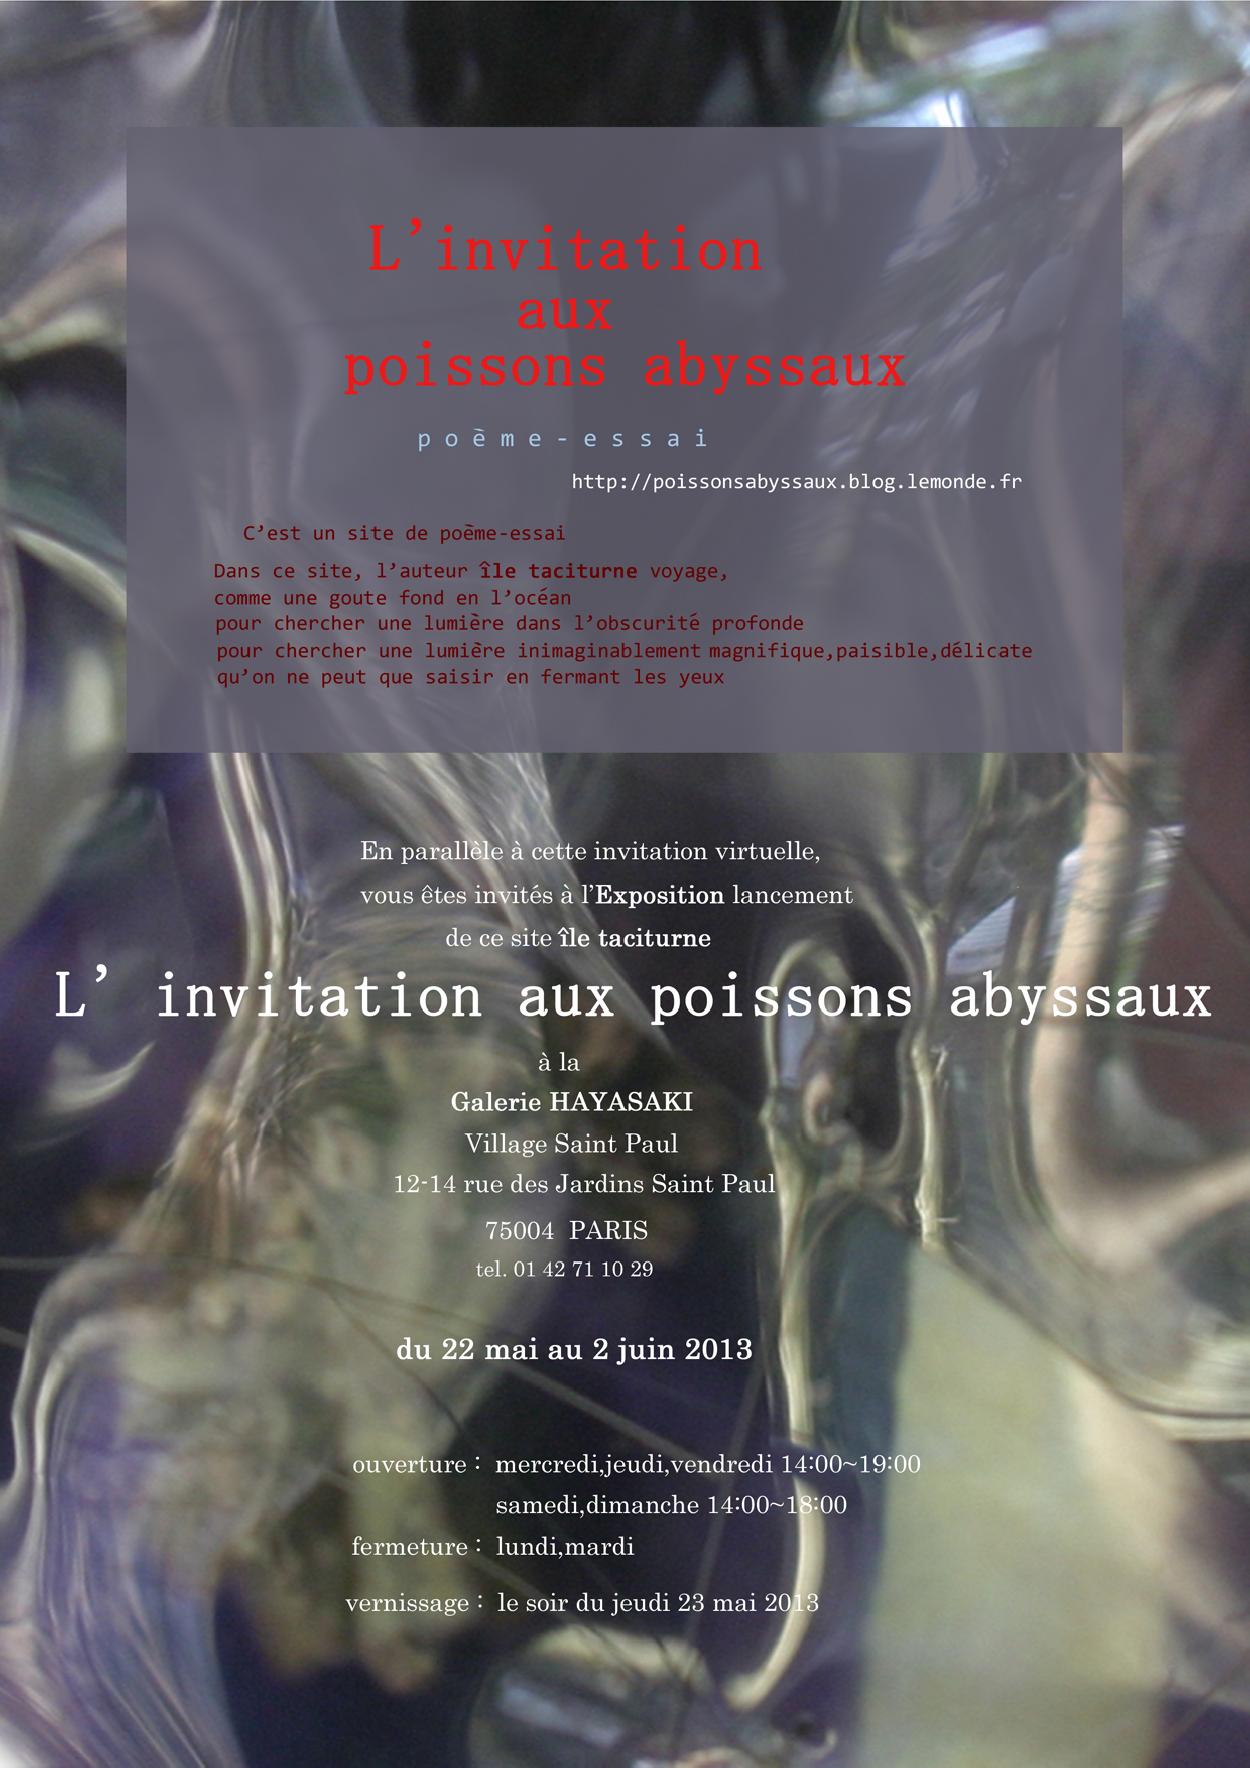 île taciturne, L'invitation aux poissons abyssaux, 2013年5月22日  - 2013年6月2日 